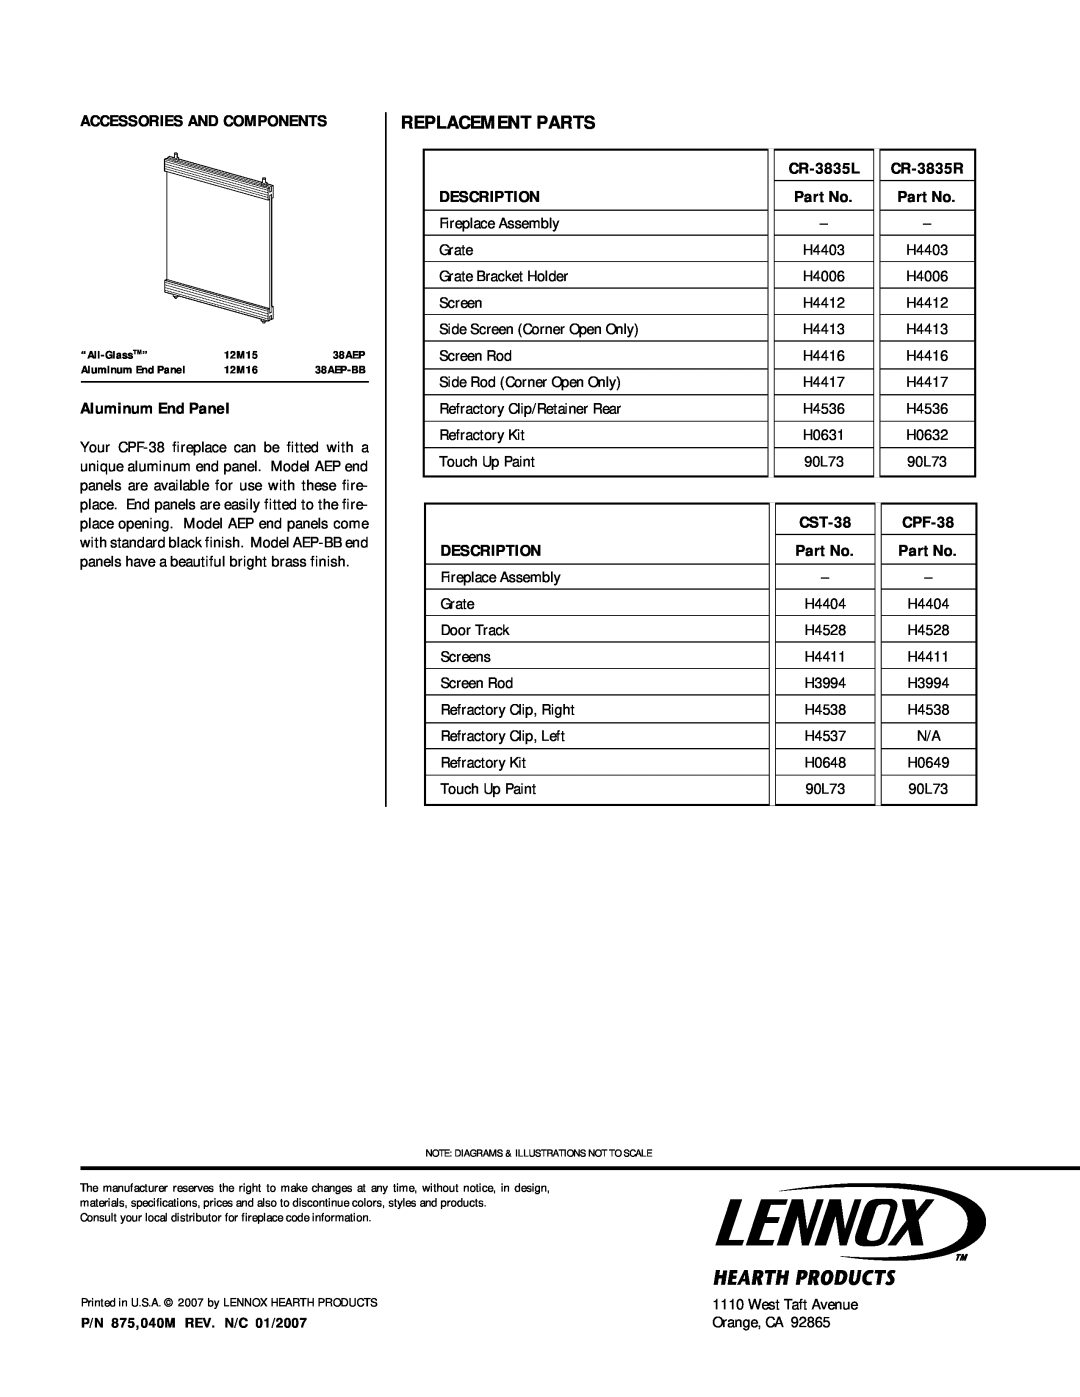 Lennox Hearth CR-3835L manual Replacement Parts, Aluminum End Panel, CR-3835R, Description, CST-38, CPF-38 